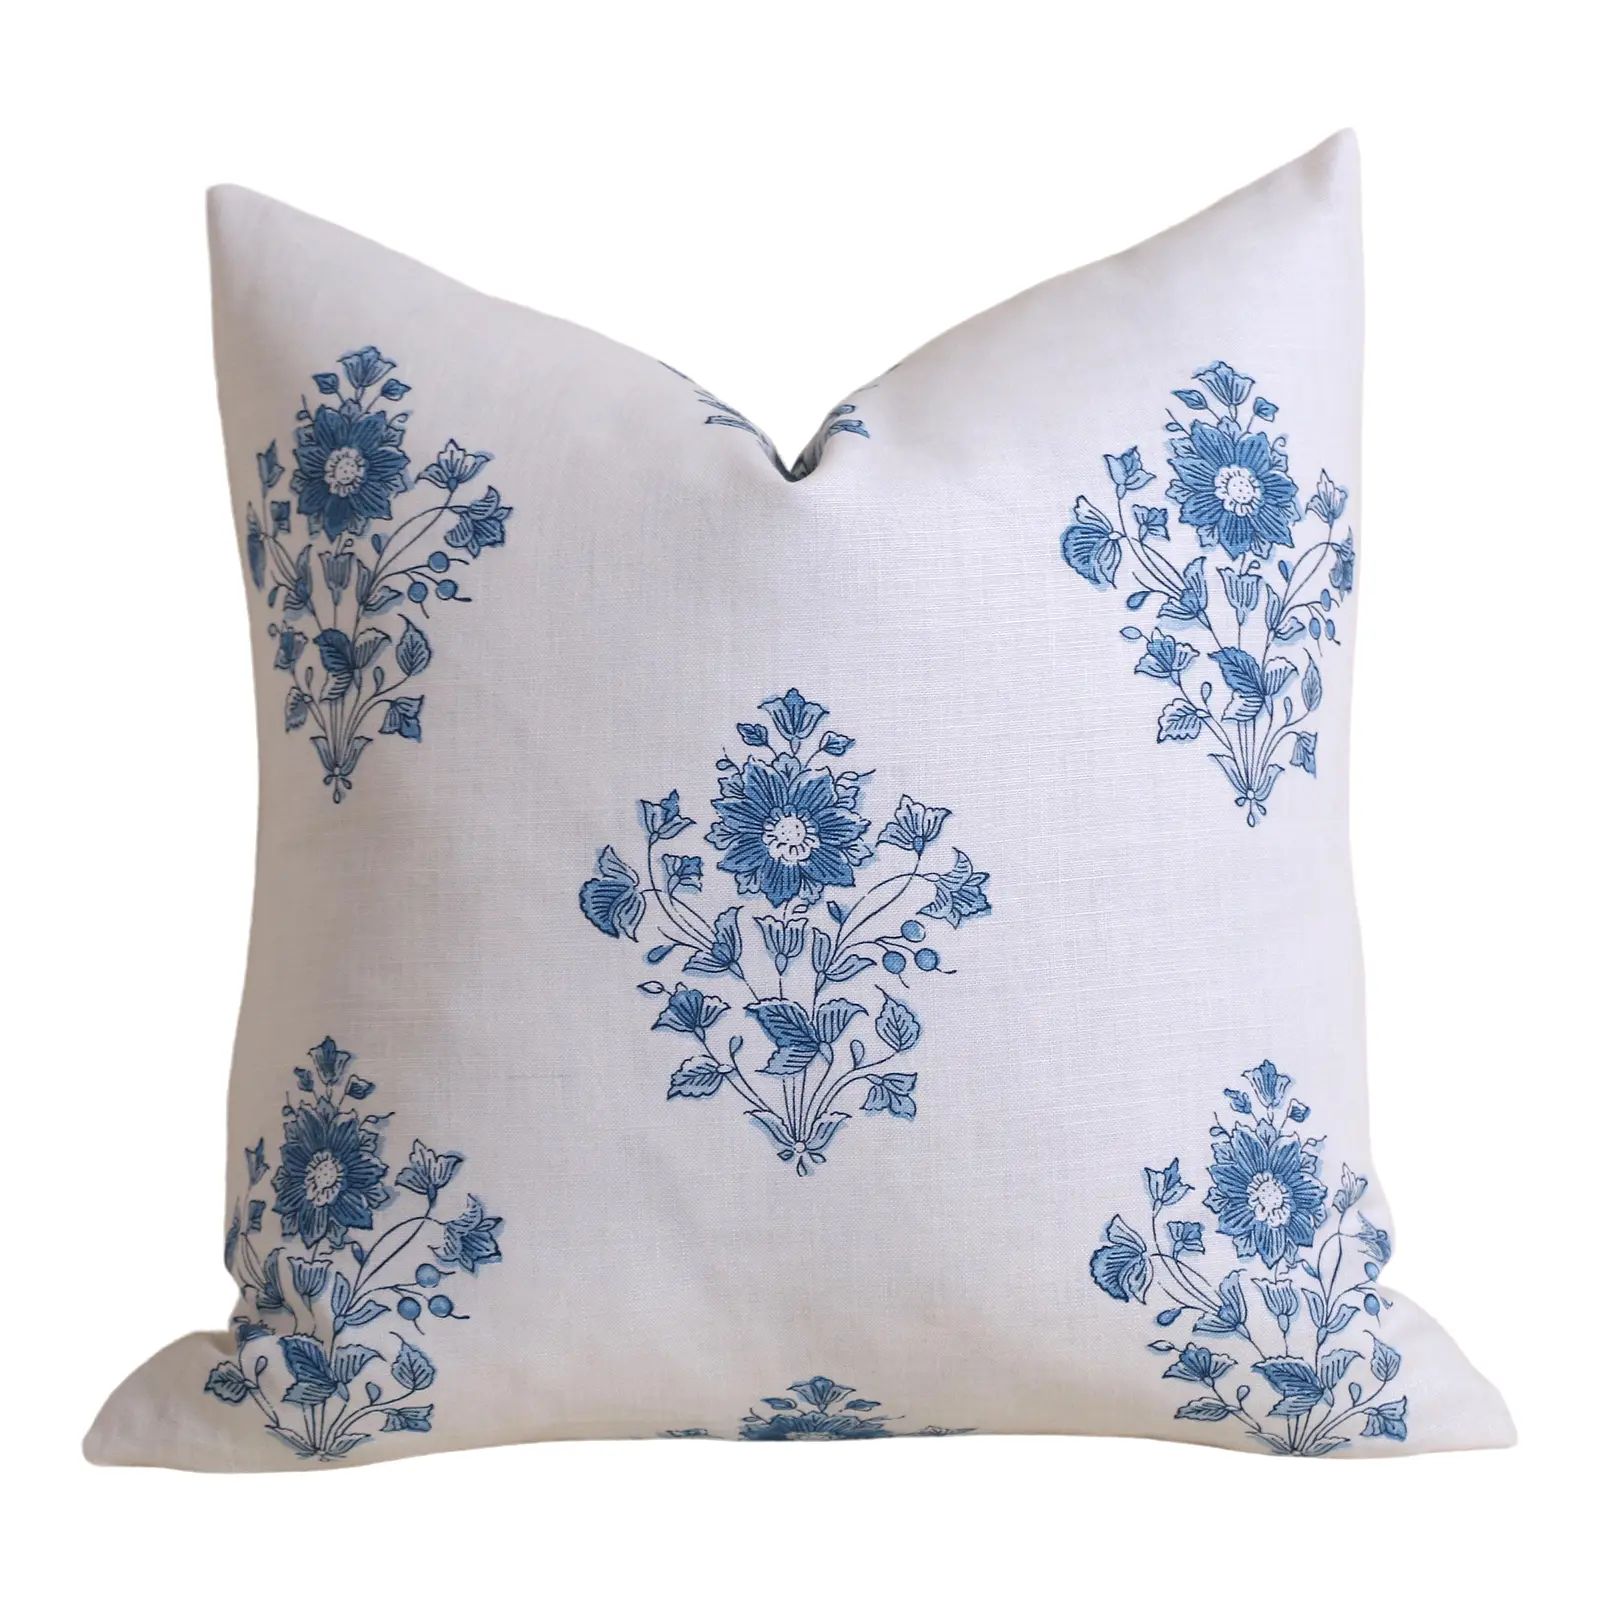 Schumacher Blue Bouquet Pillow Cover | Chairish